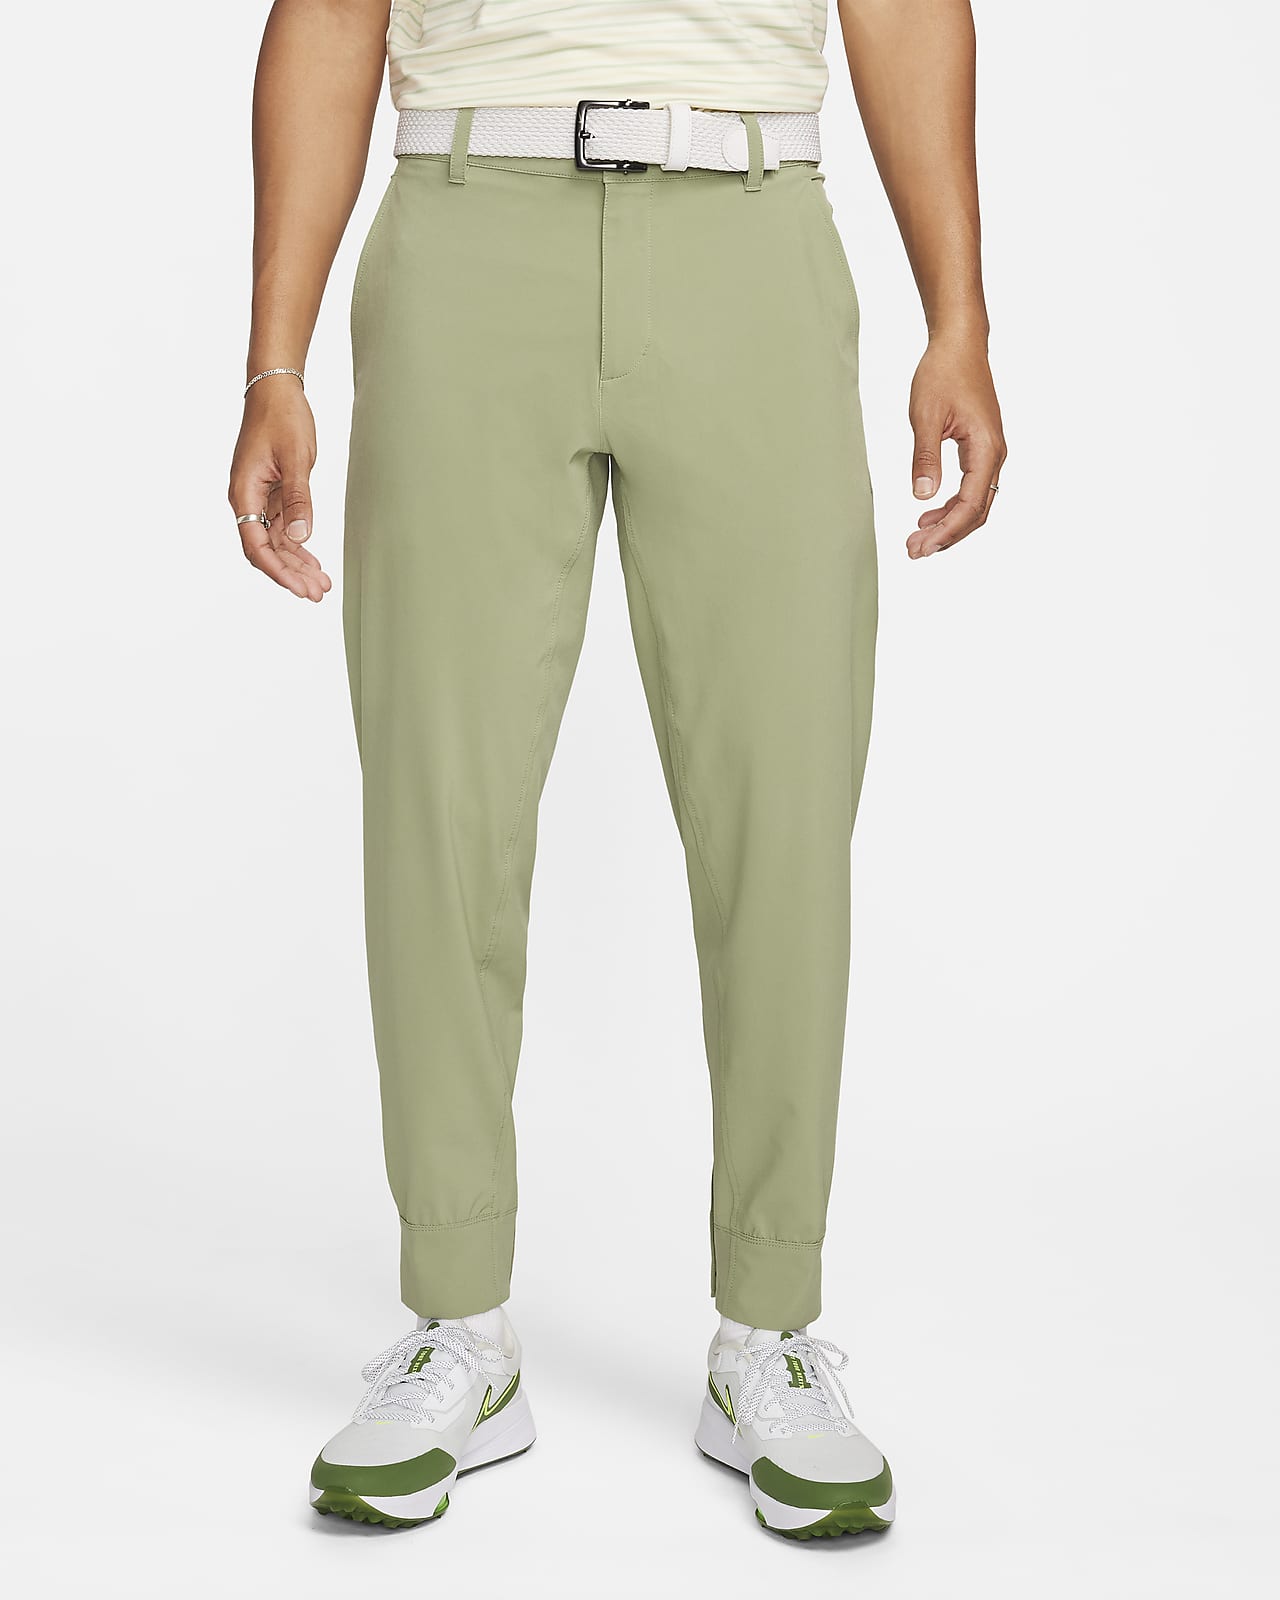 Pantalones de golf tipo joggers para hombre Nike Tour Repel